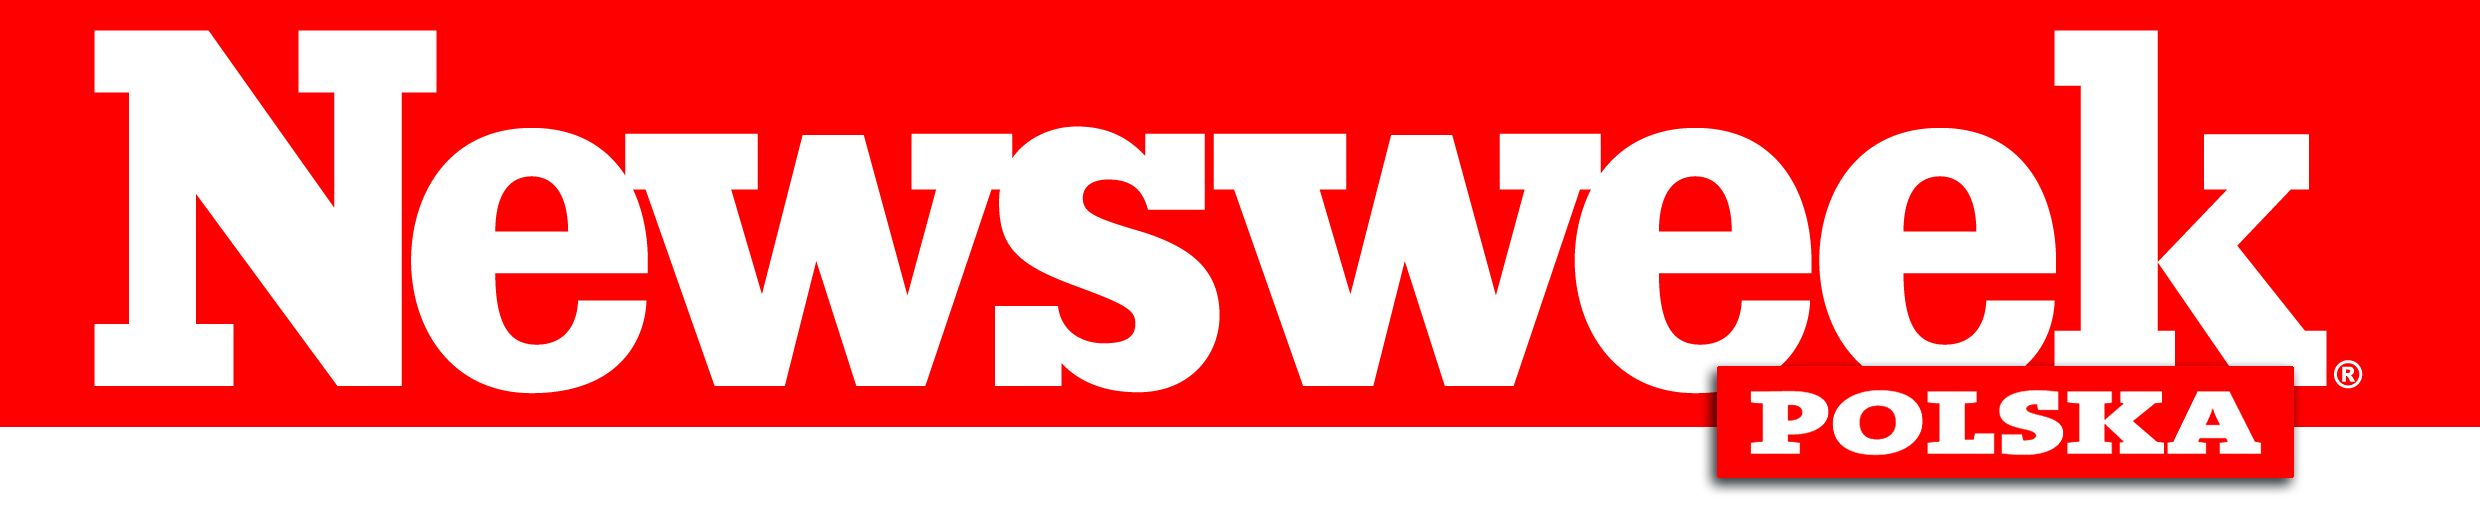 newsweek_logo_2009